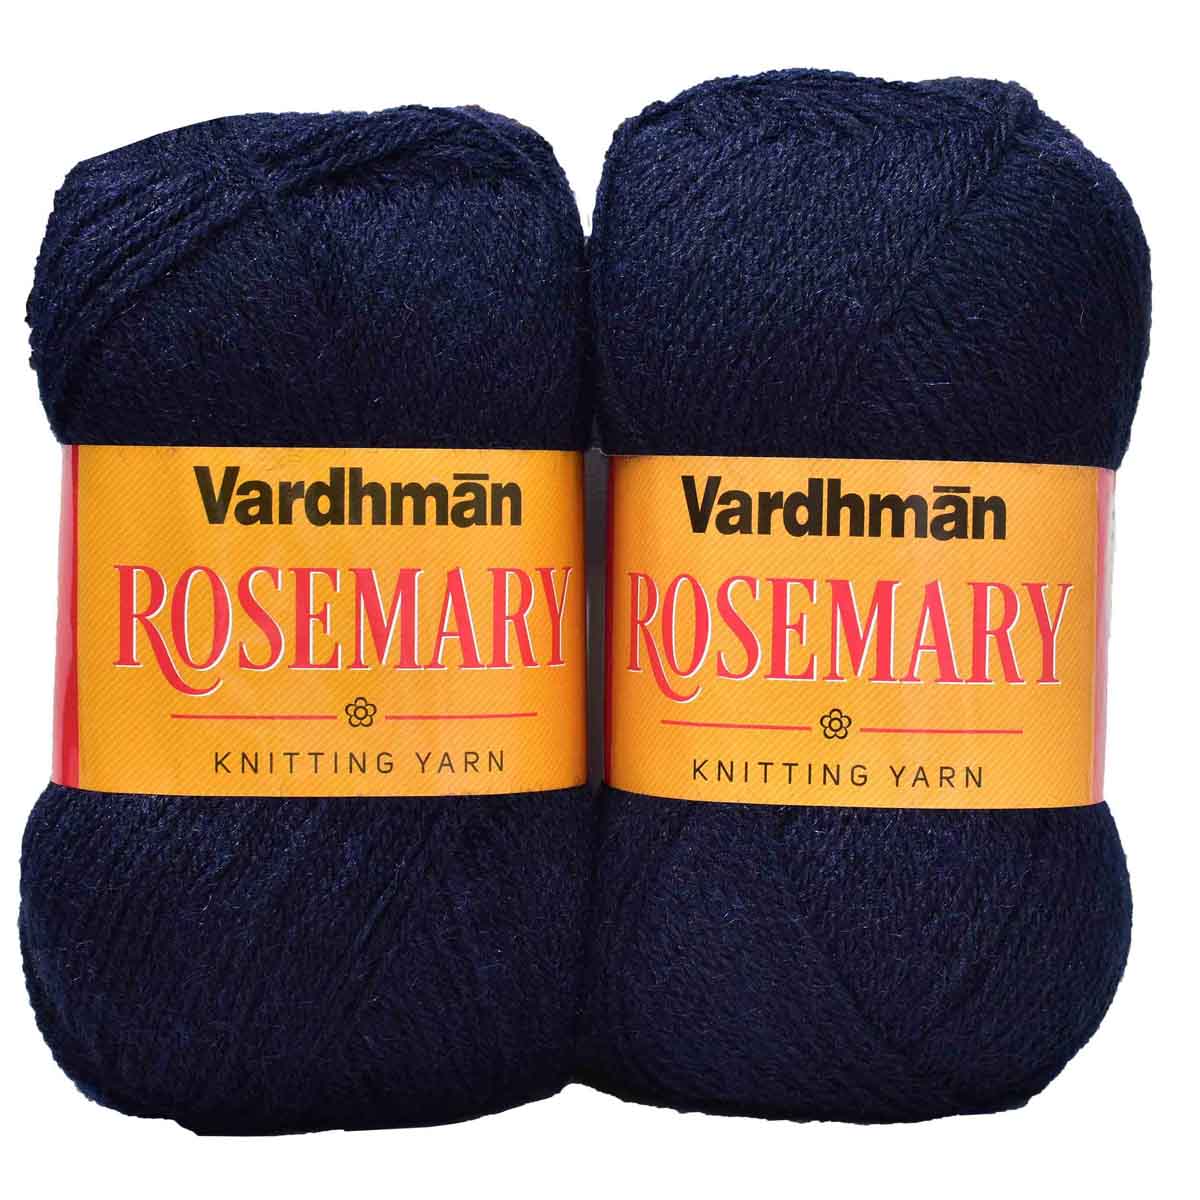 Vardhman Rosemary Knitting Yarn